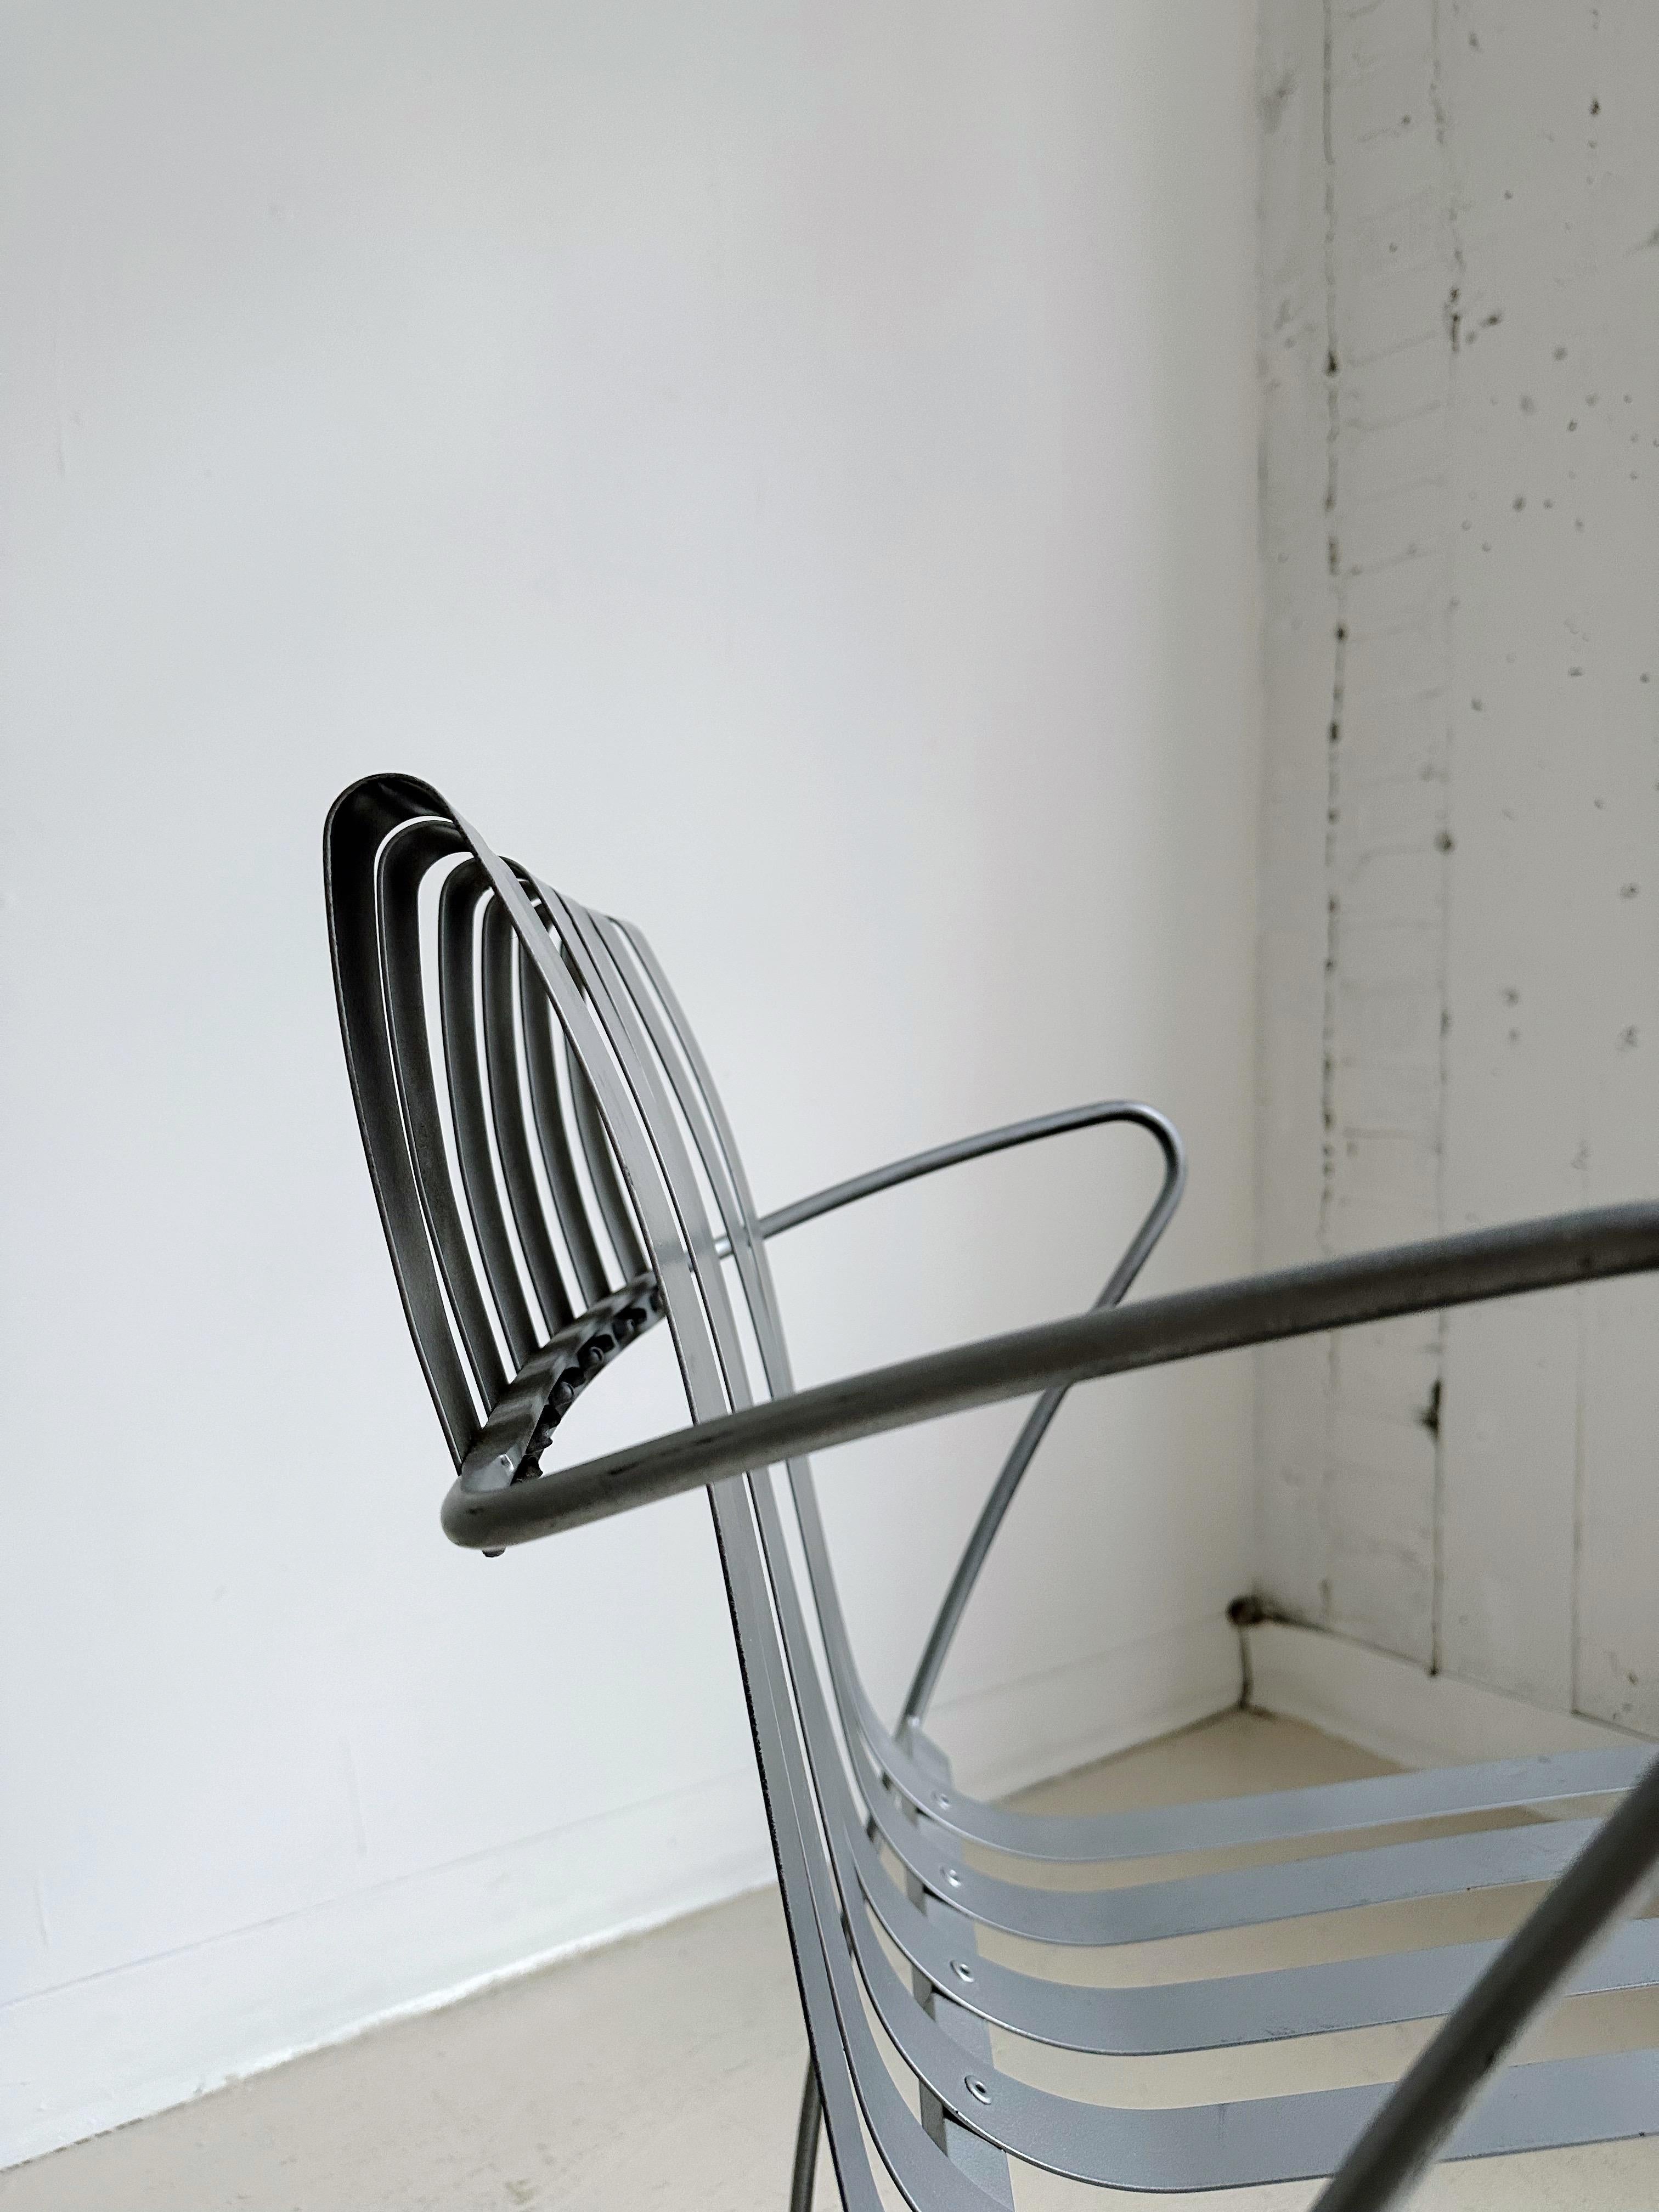 Chaise sculpturale en acier revêtu de poudre, faite à la main, unique en son genre

//


Dimensions :

21 